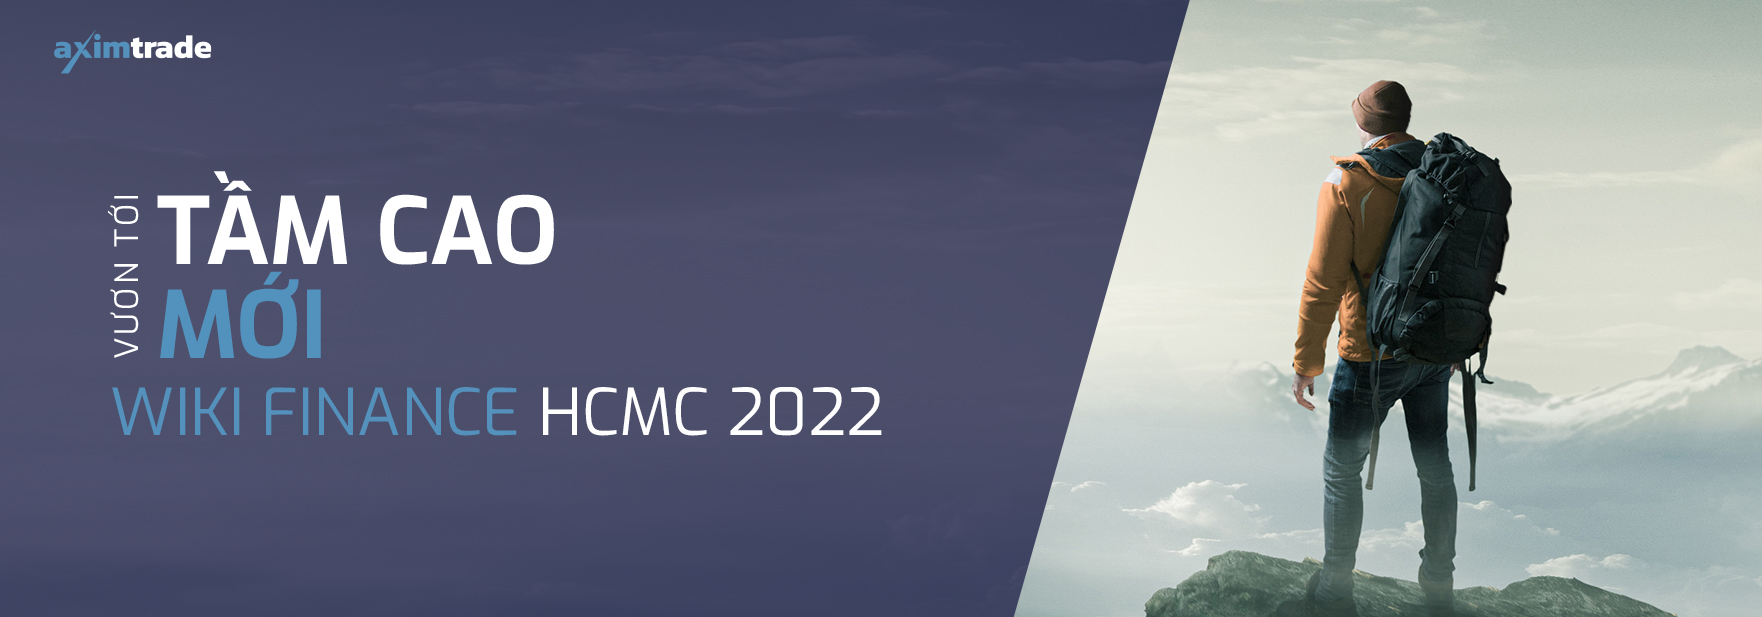 Wiki Finance Expo HCMC 2022